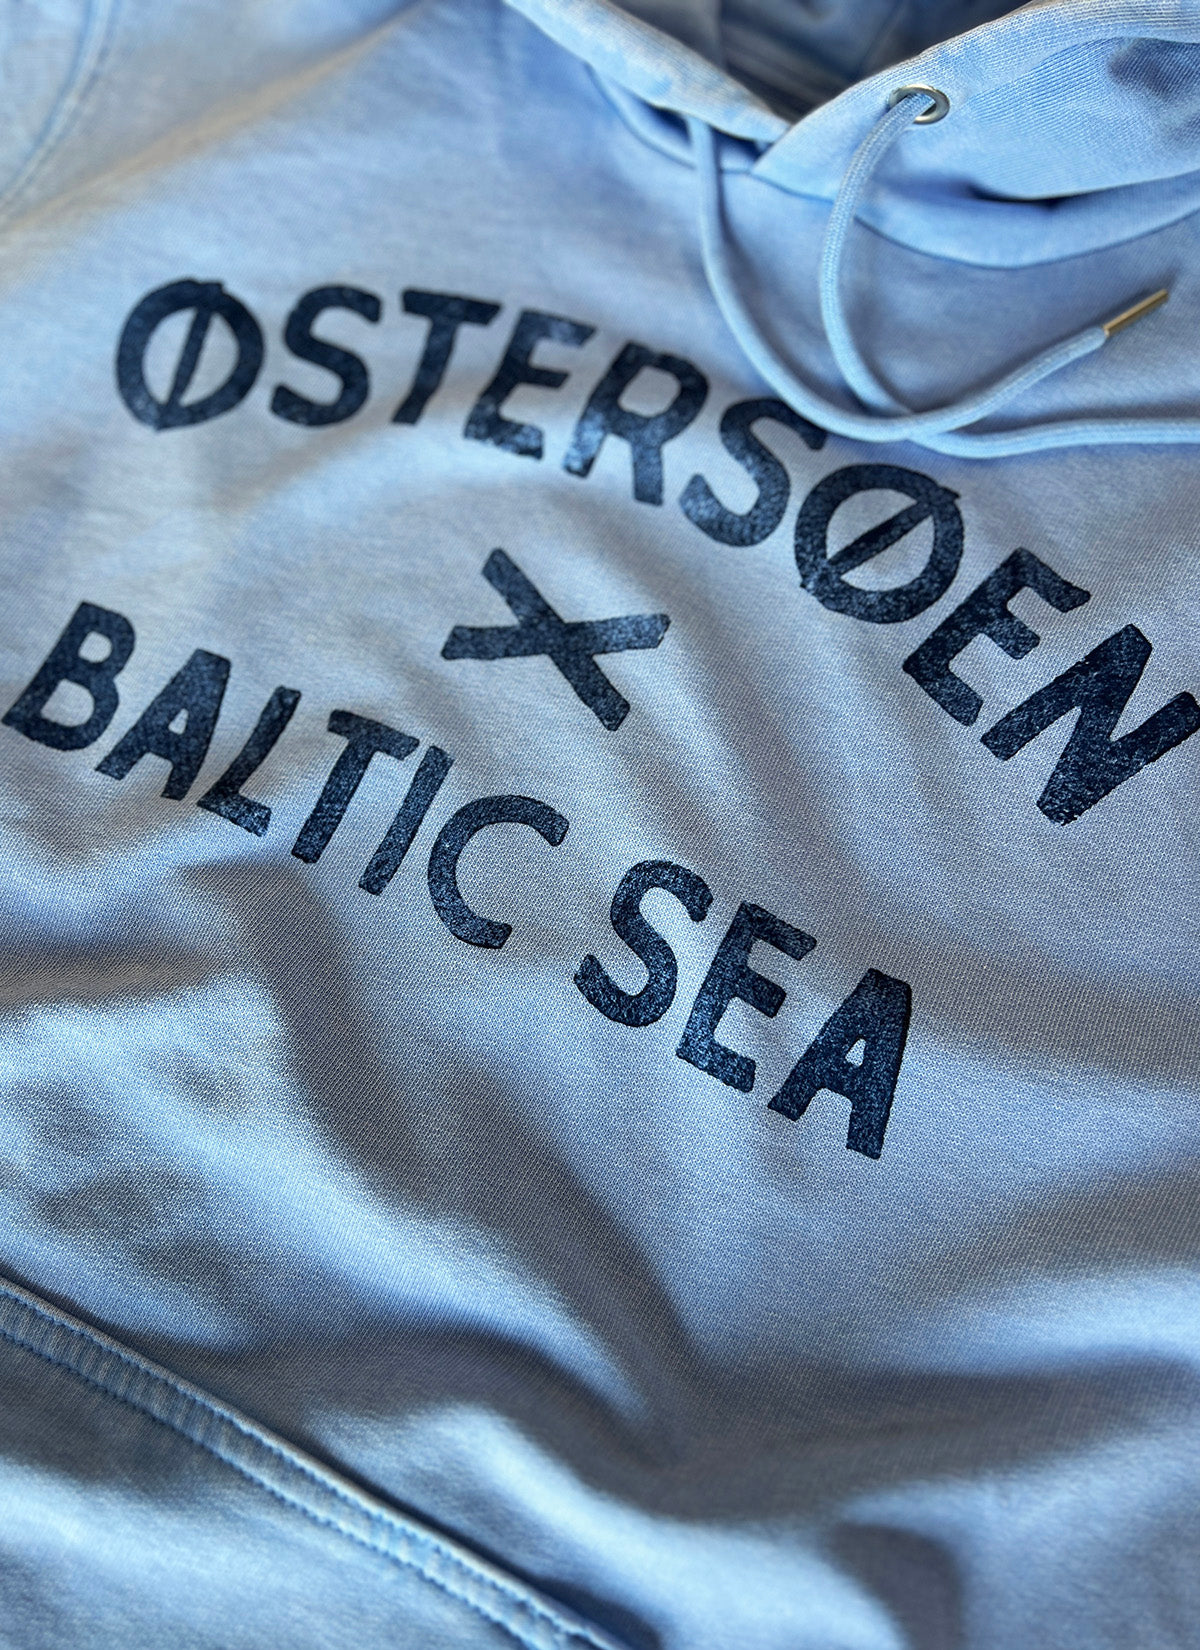 Hoodie "Østersøen - Baltic Sea"